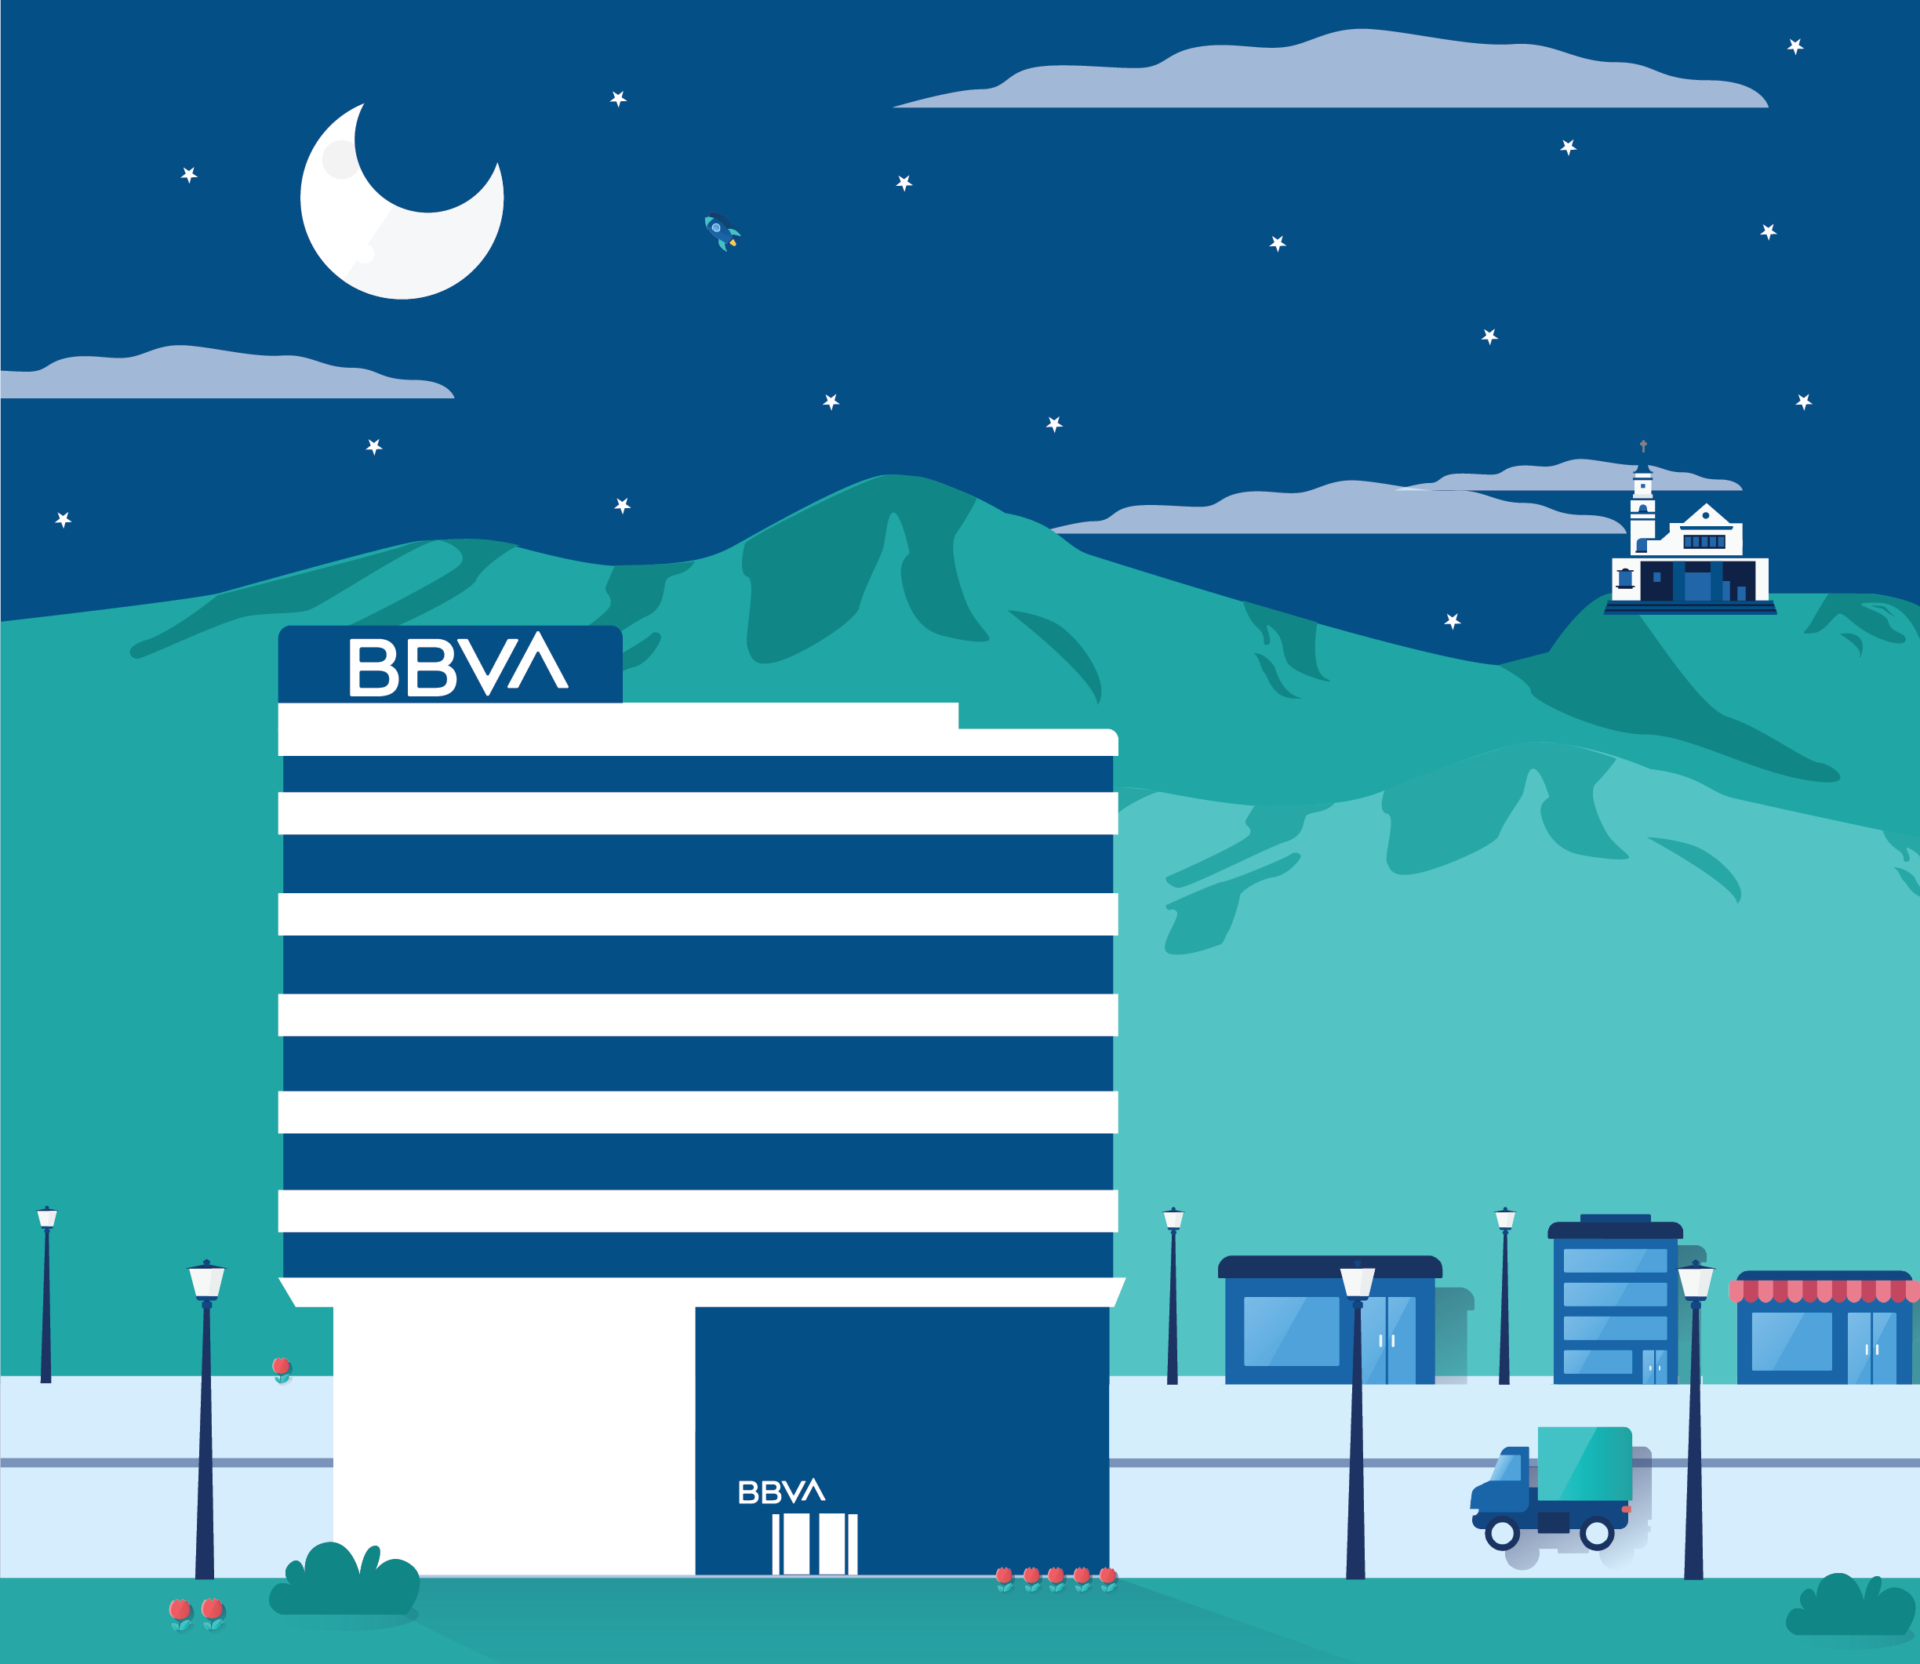 Banco BBVA en Colombia portada